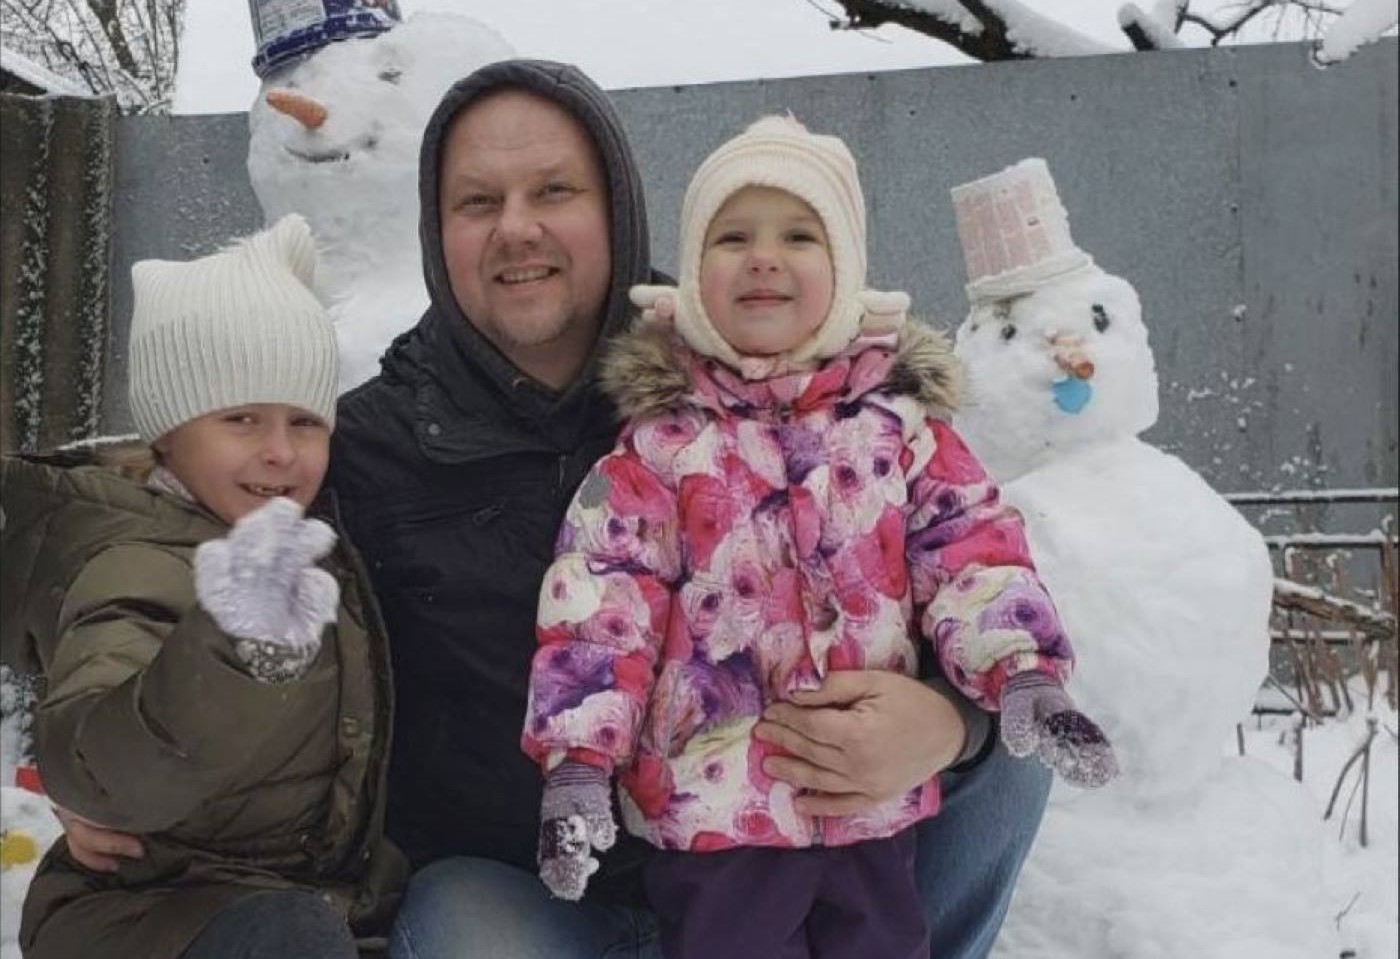 アンナさん撮影 雪だるまを作る夫アンドリーさんと子供たち